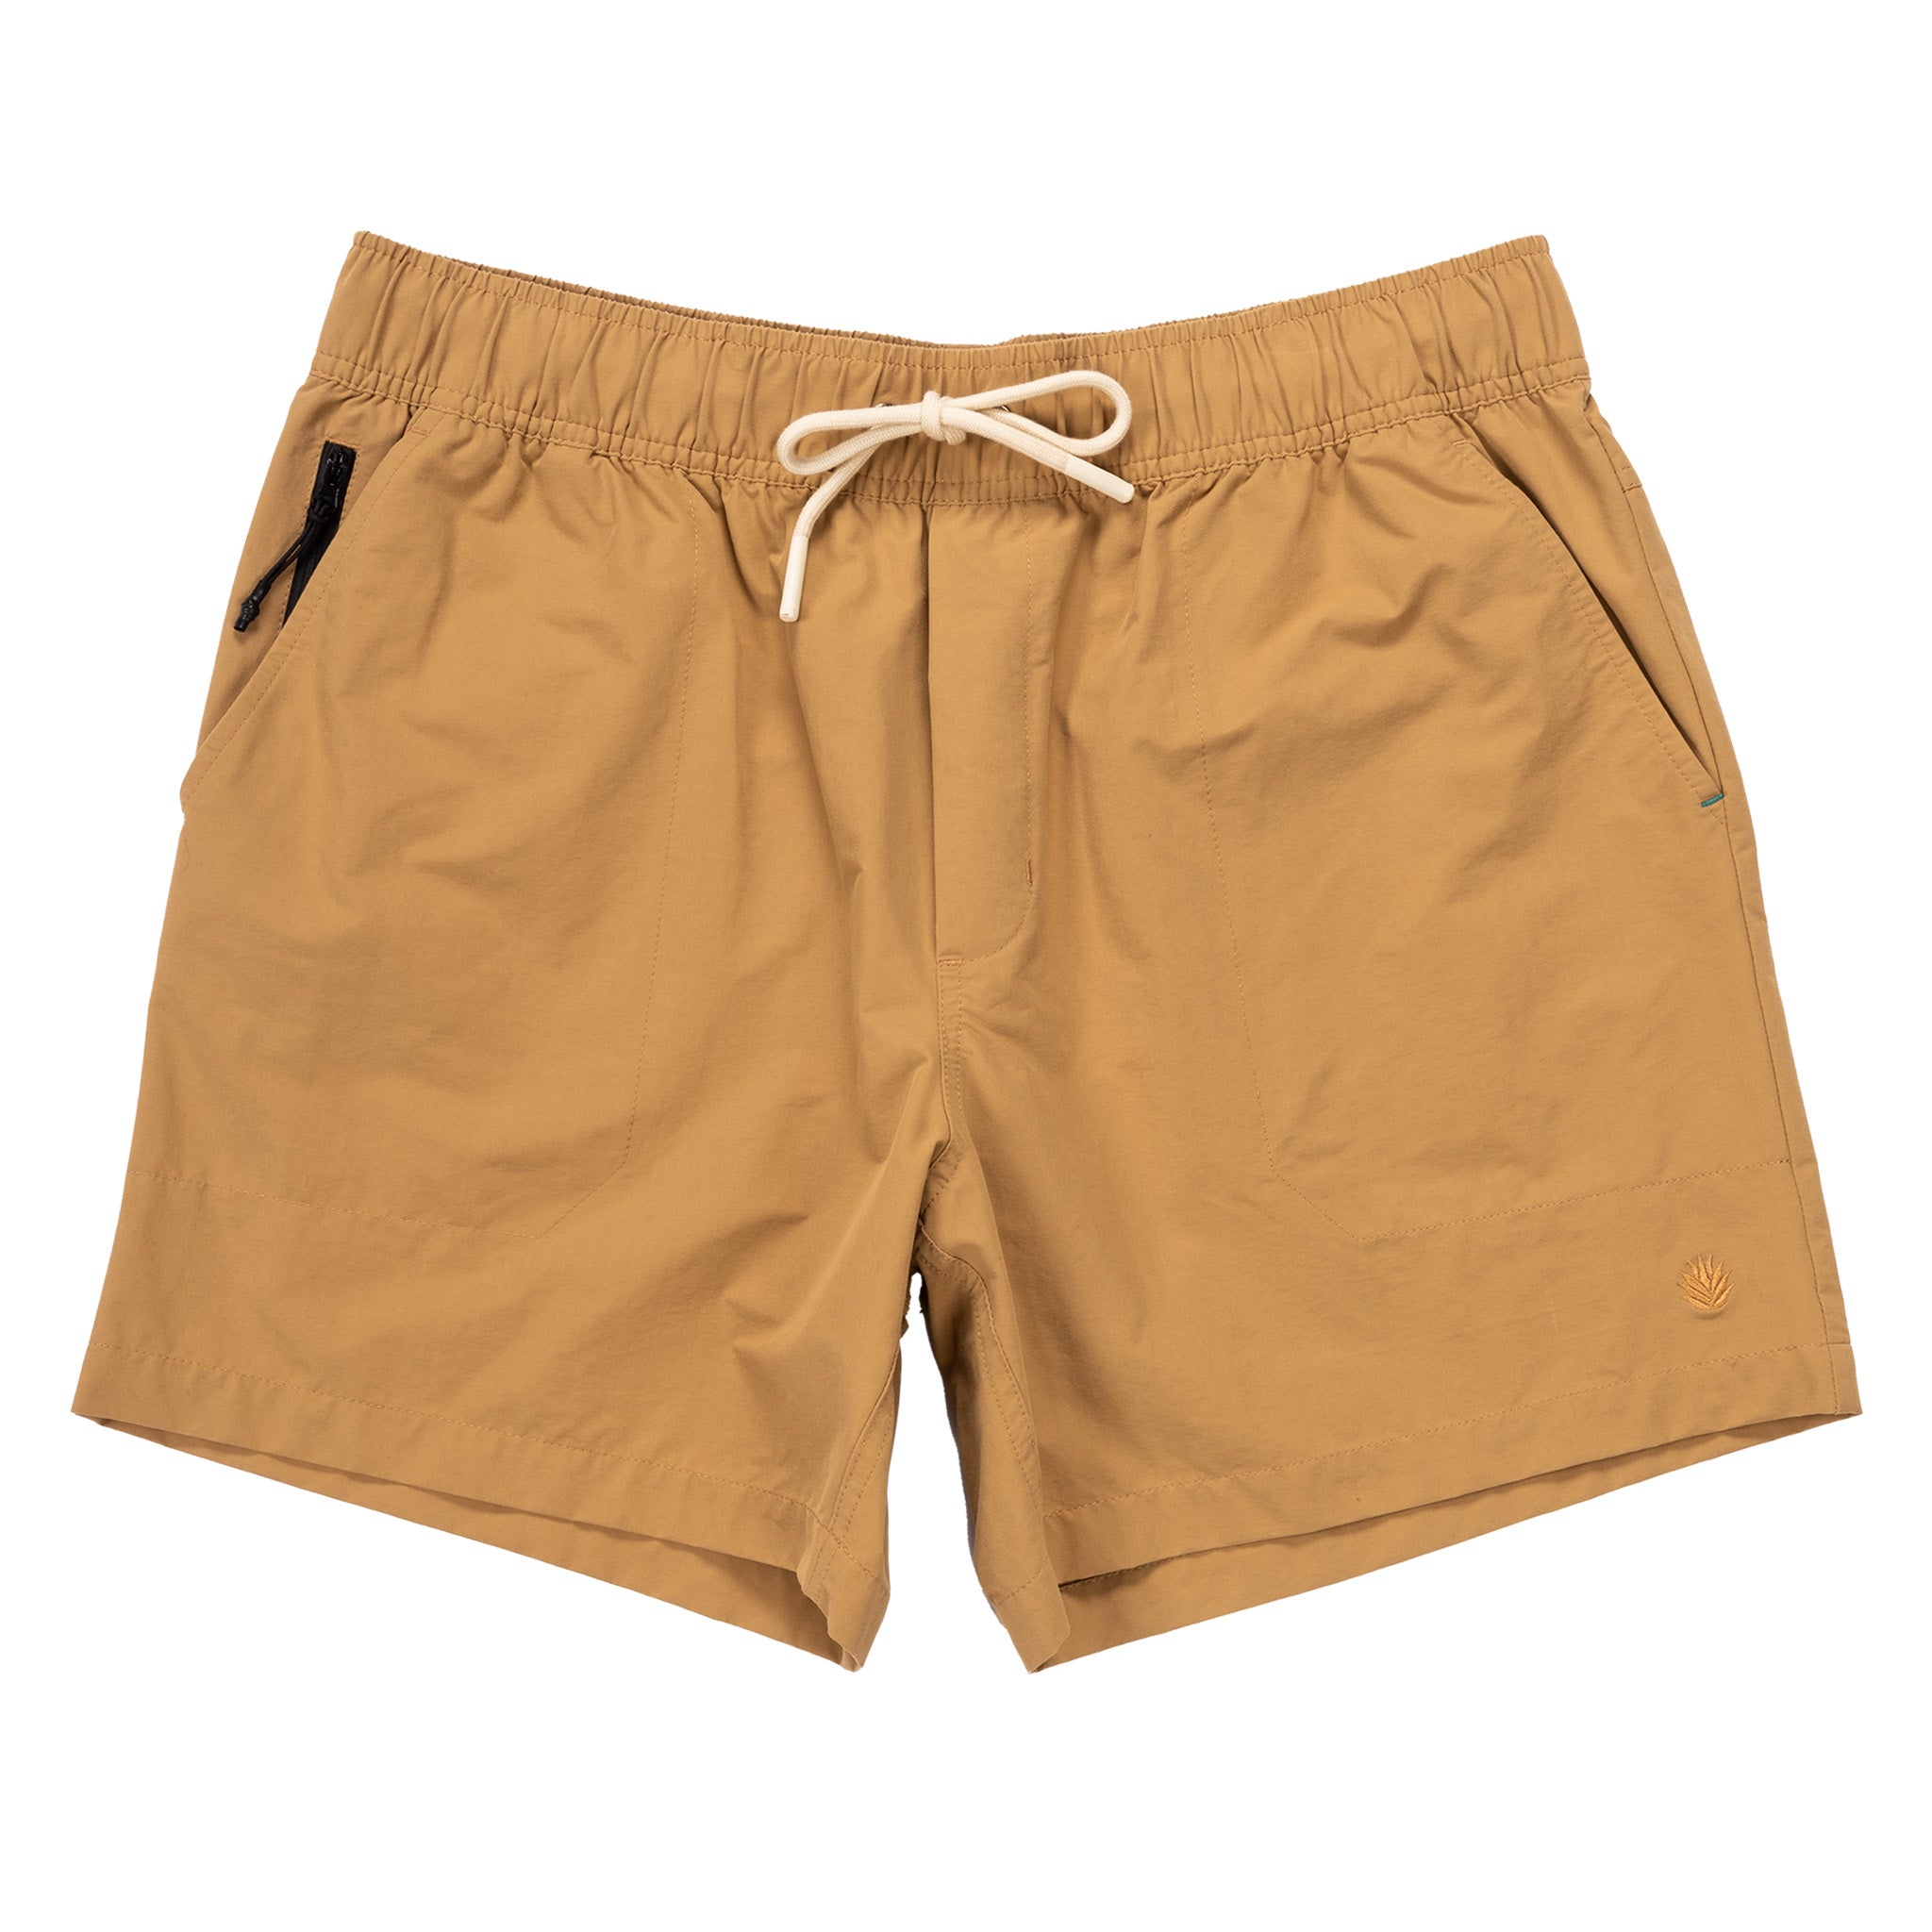 Bajada Hybrid Shorts